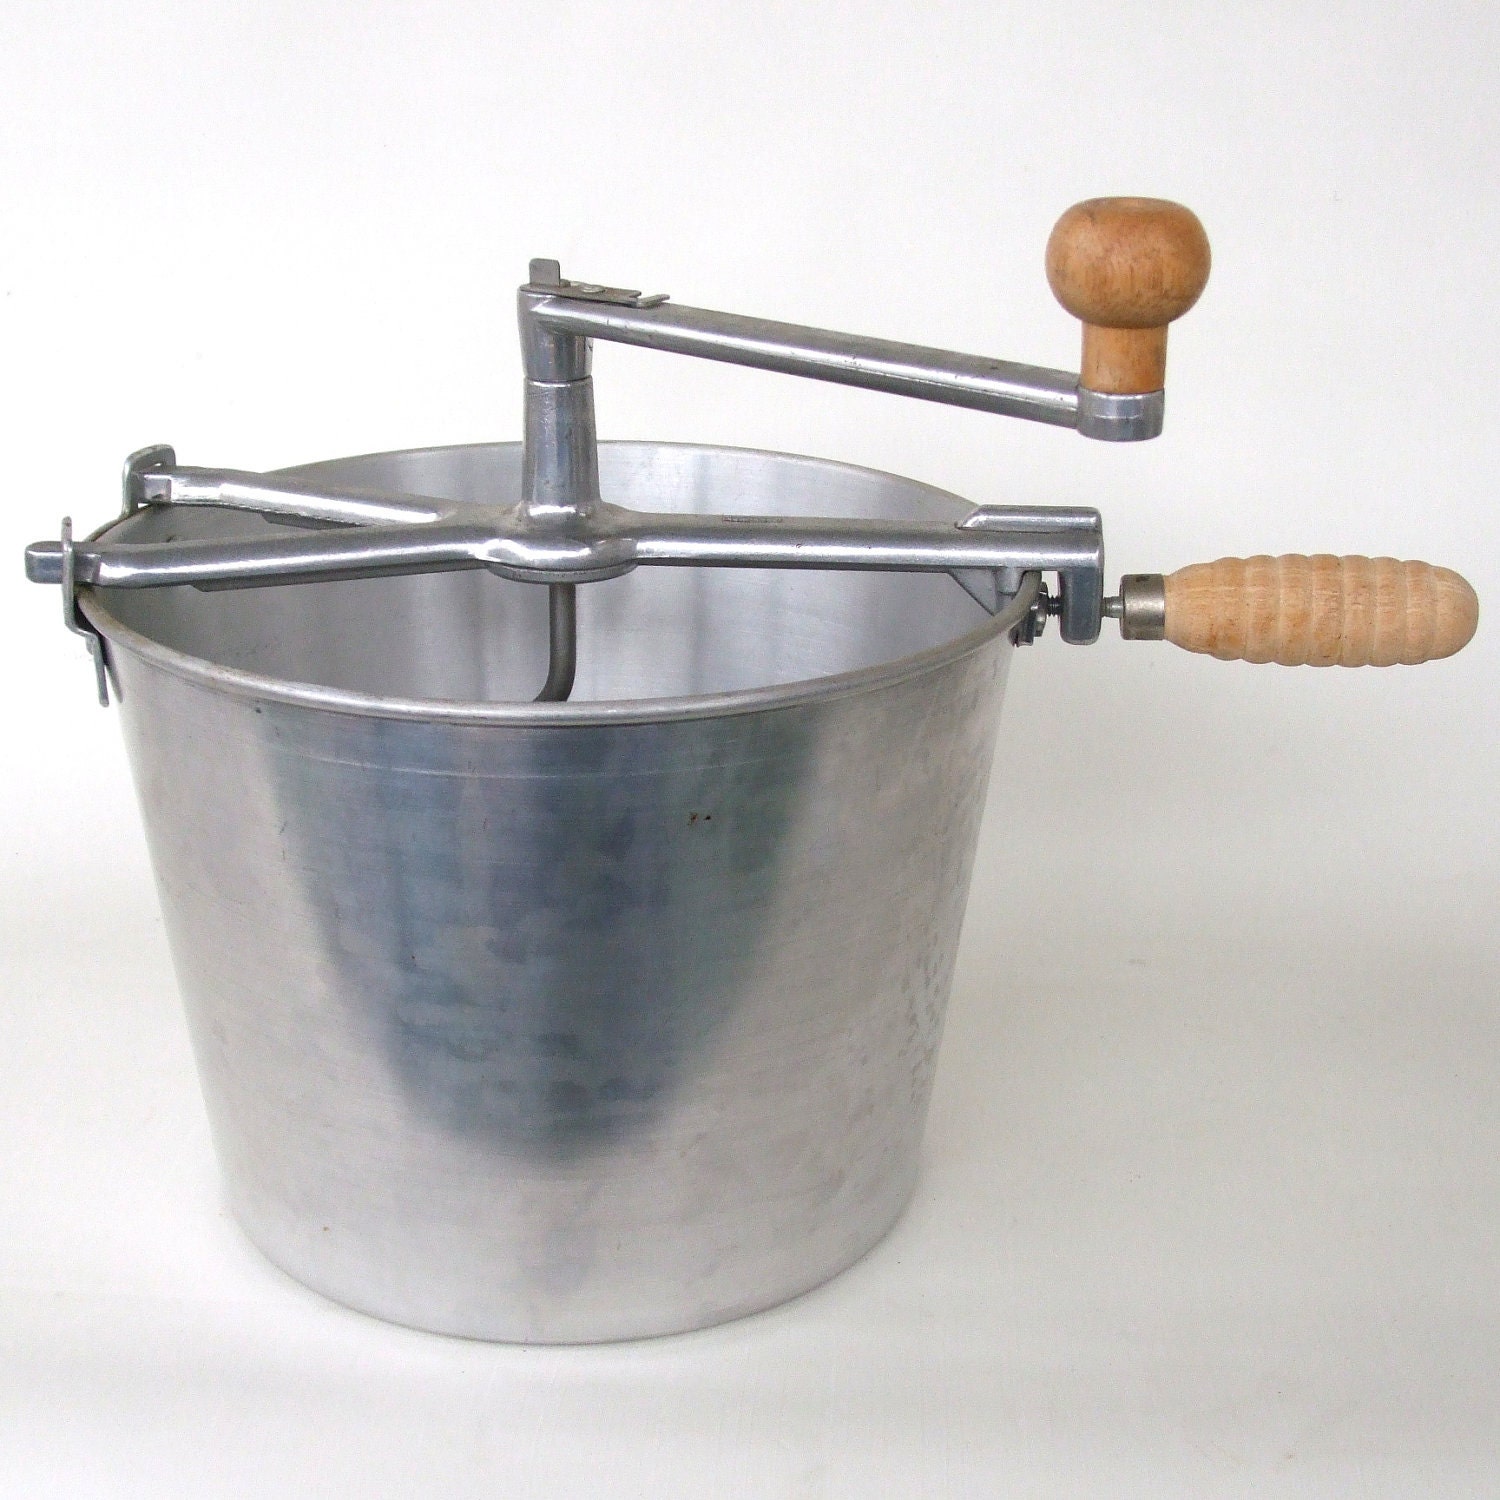 Hand-cranked dough mixer